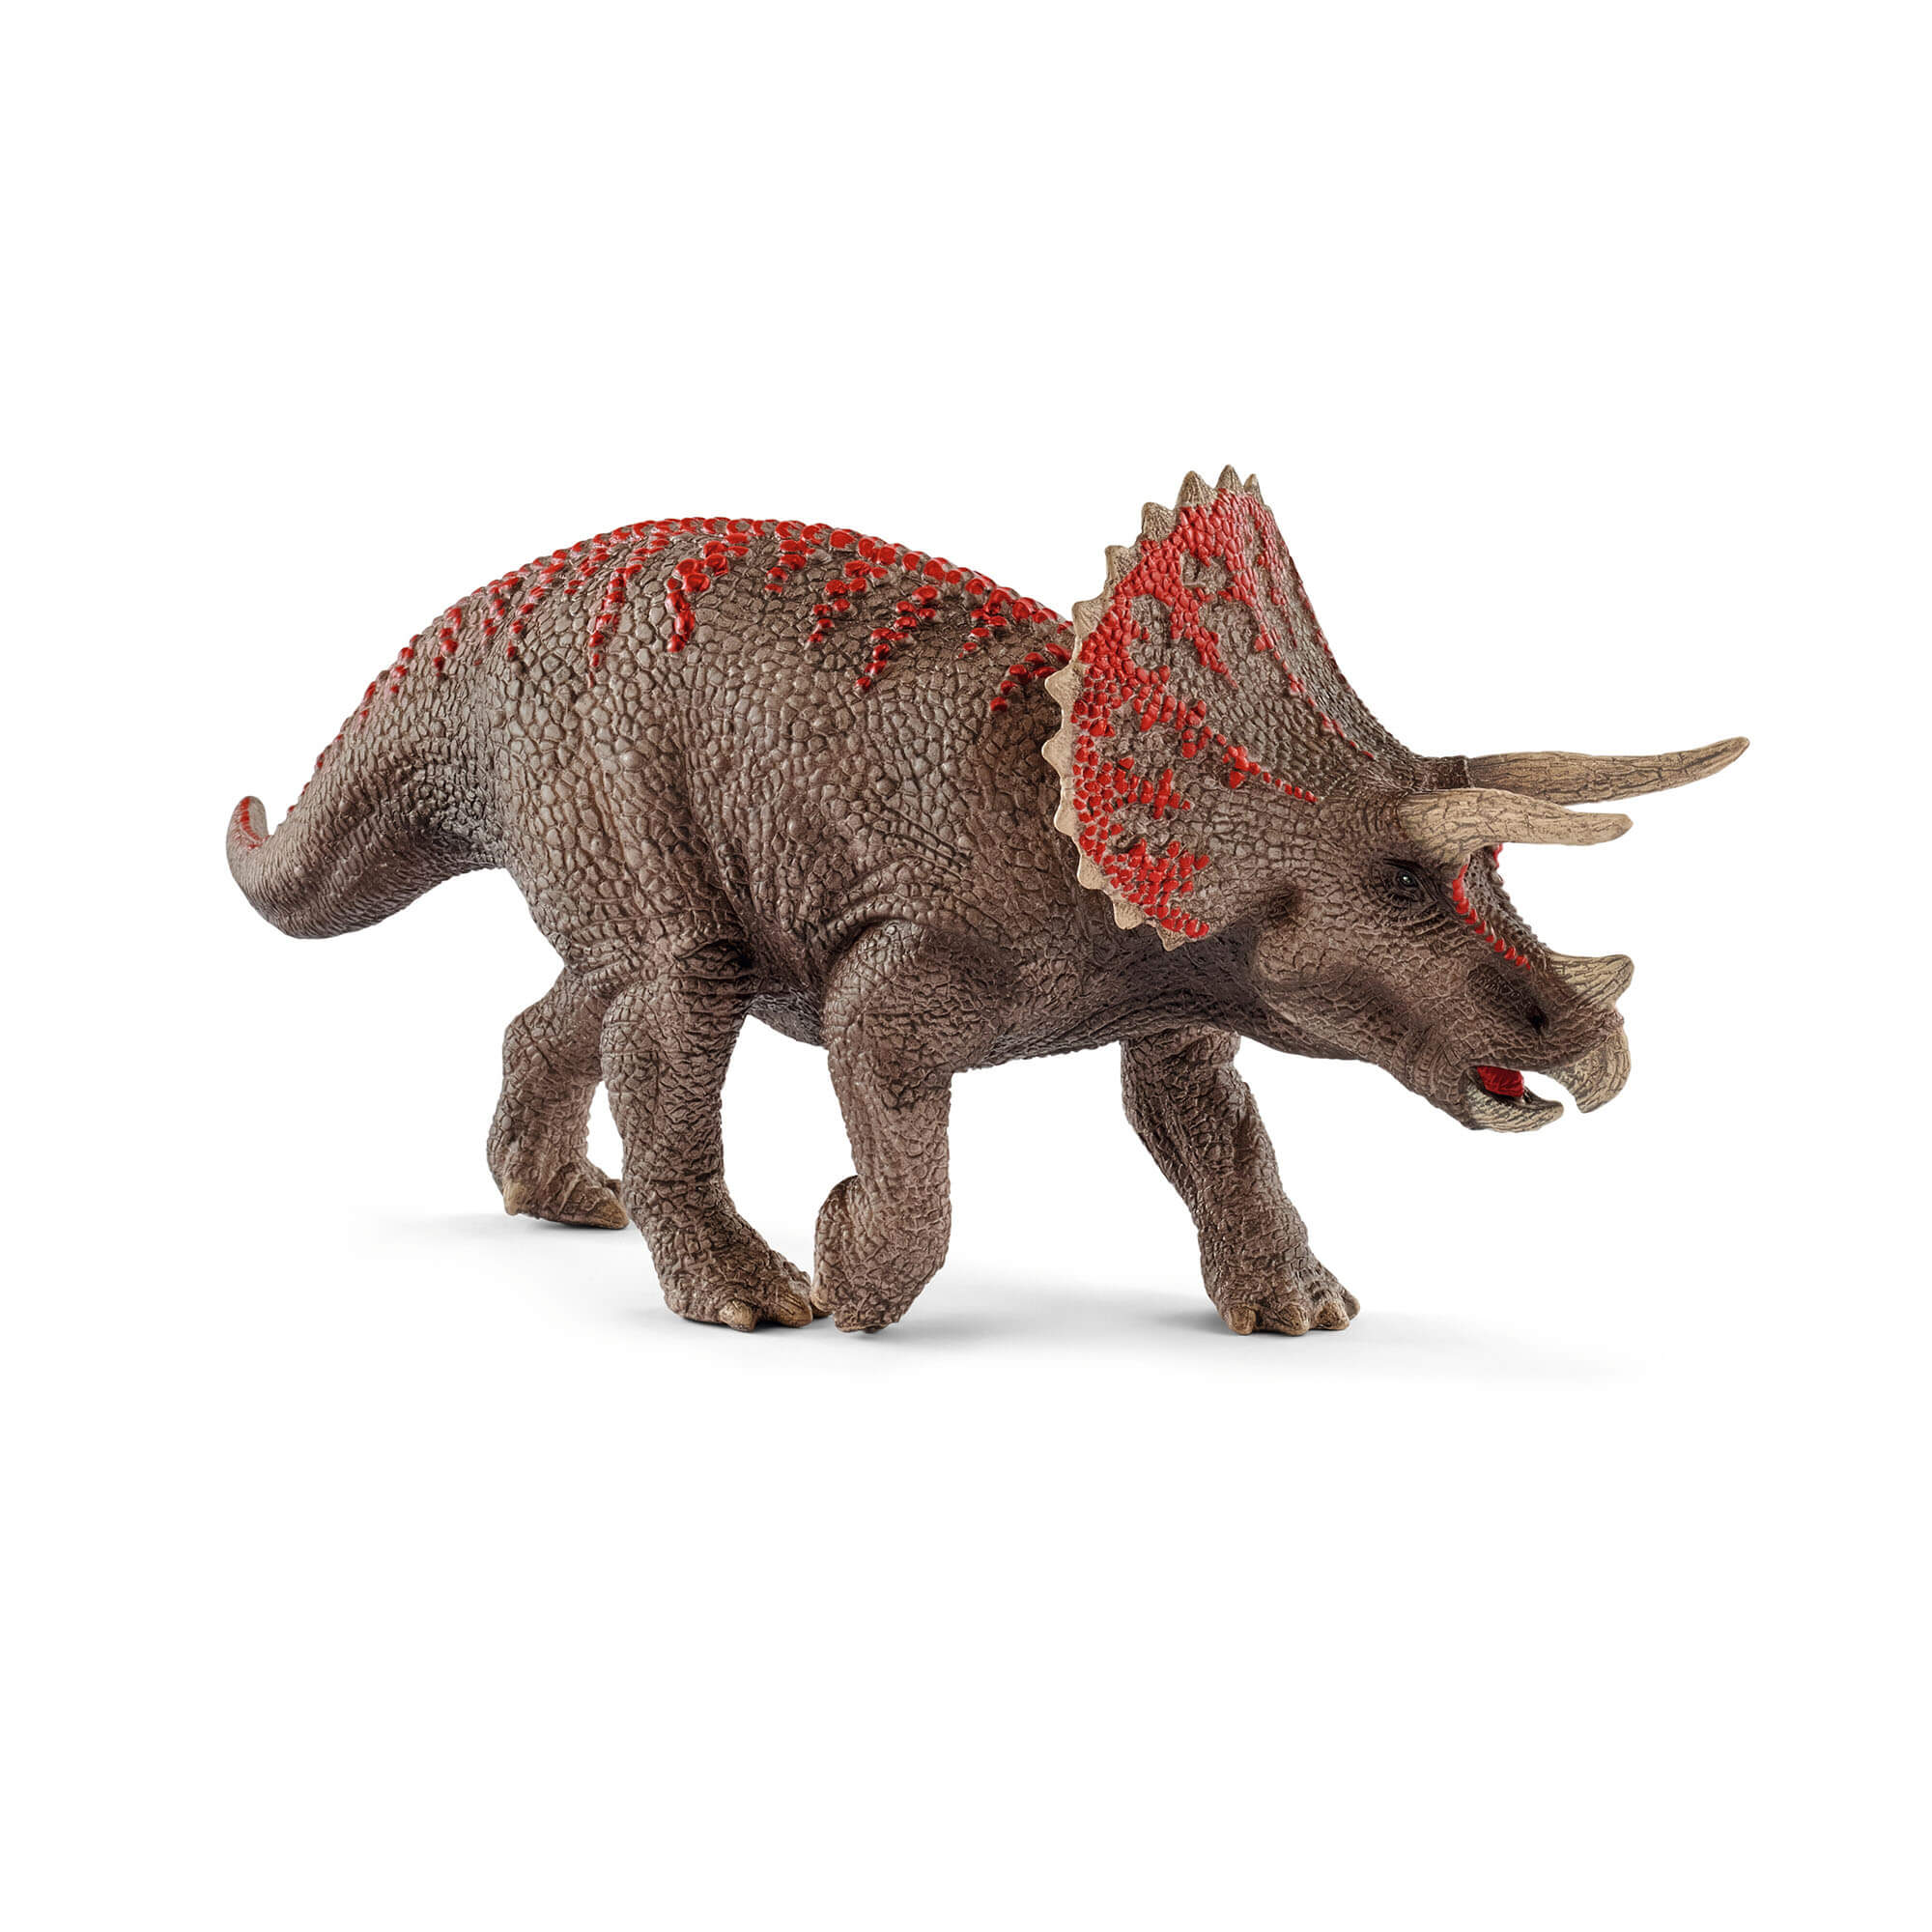 Schleich Dinosaurs Triceratops Figure